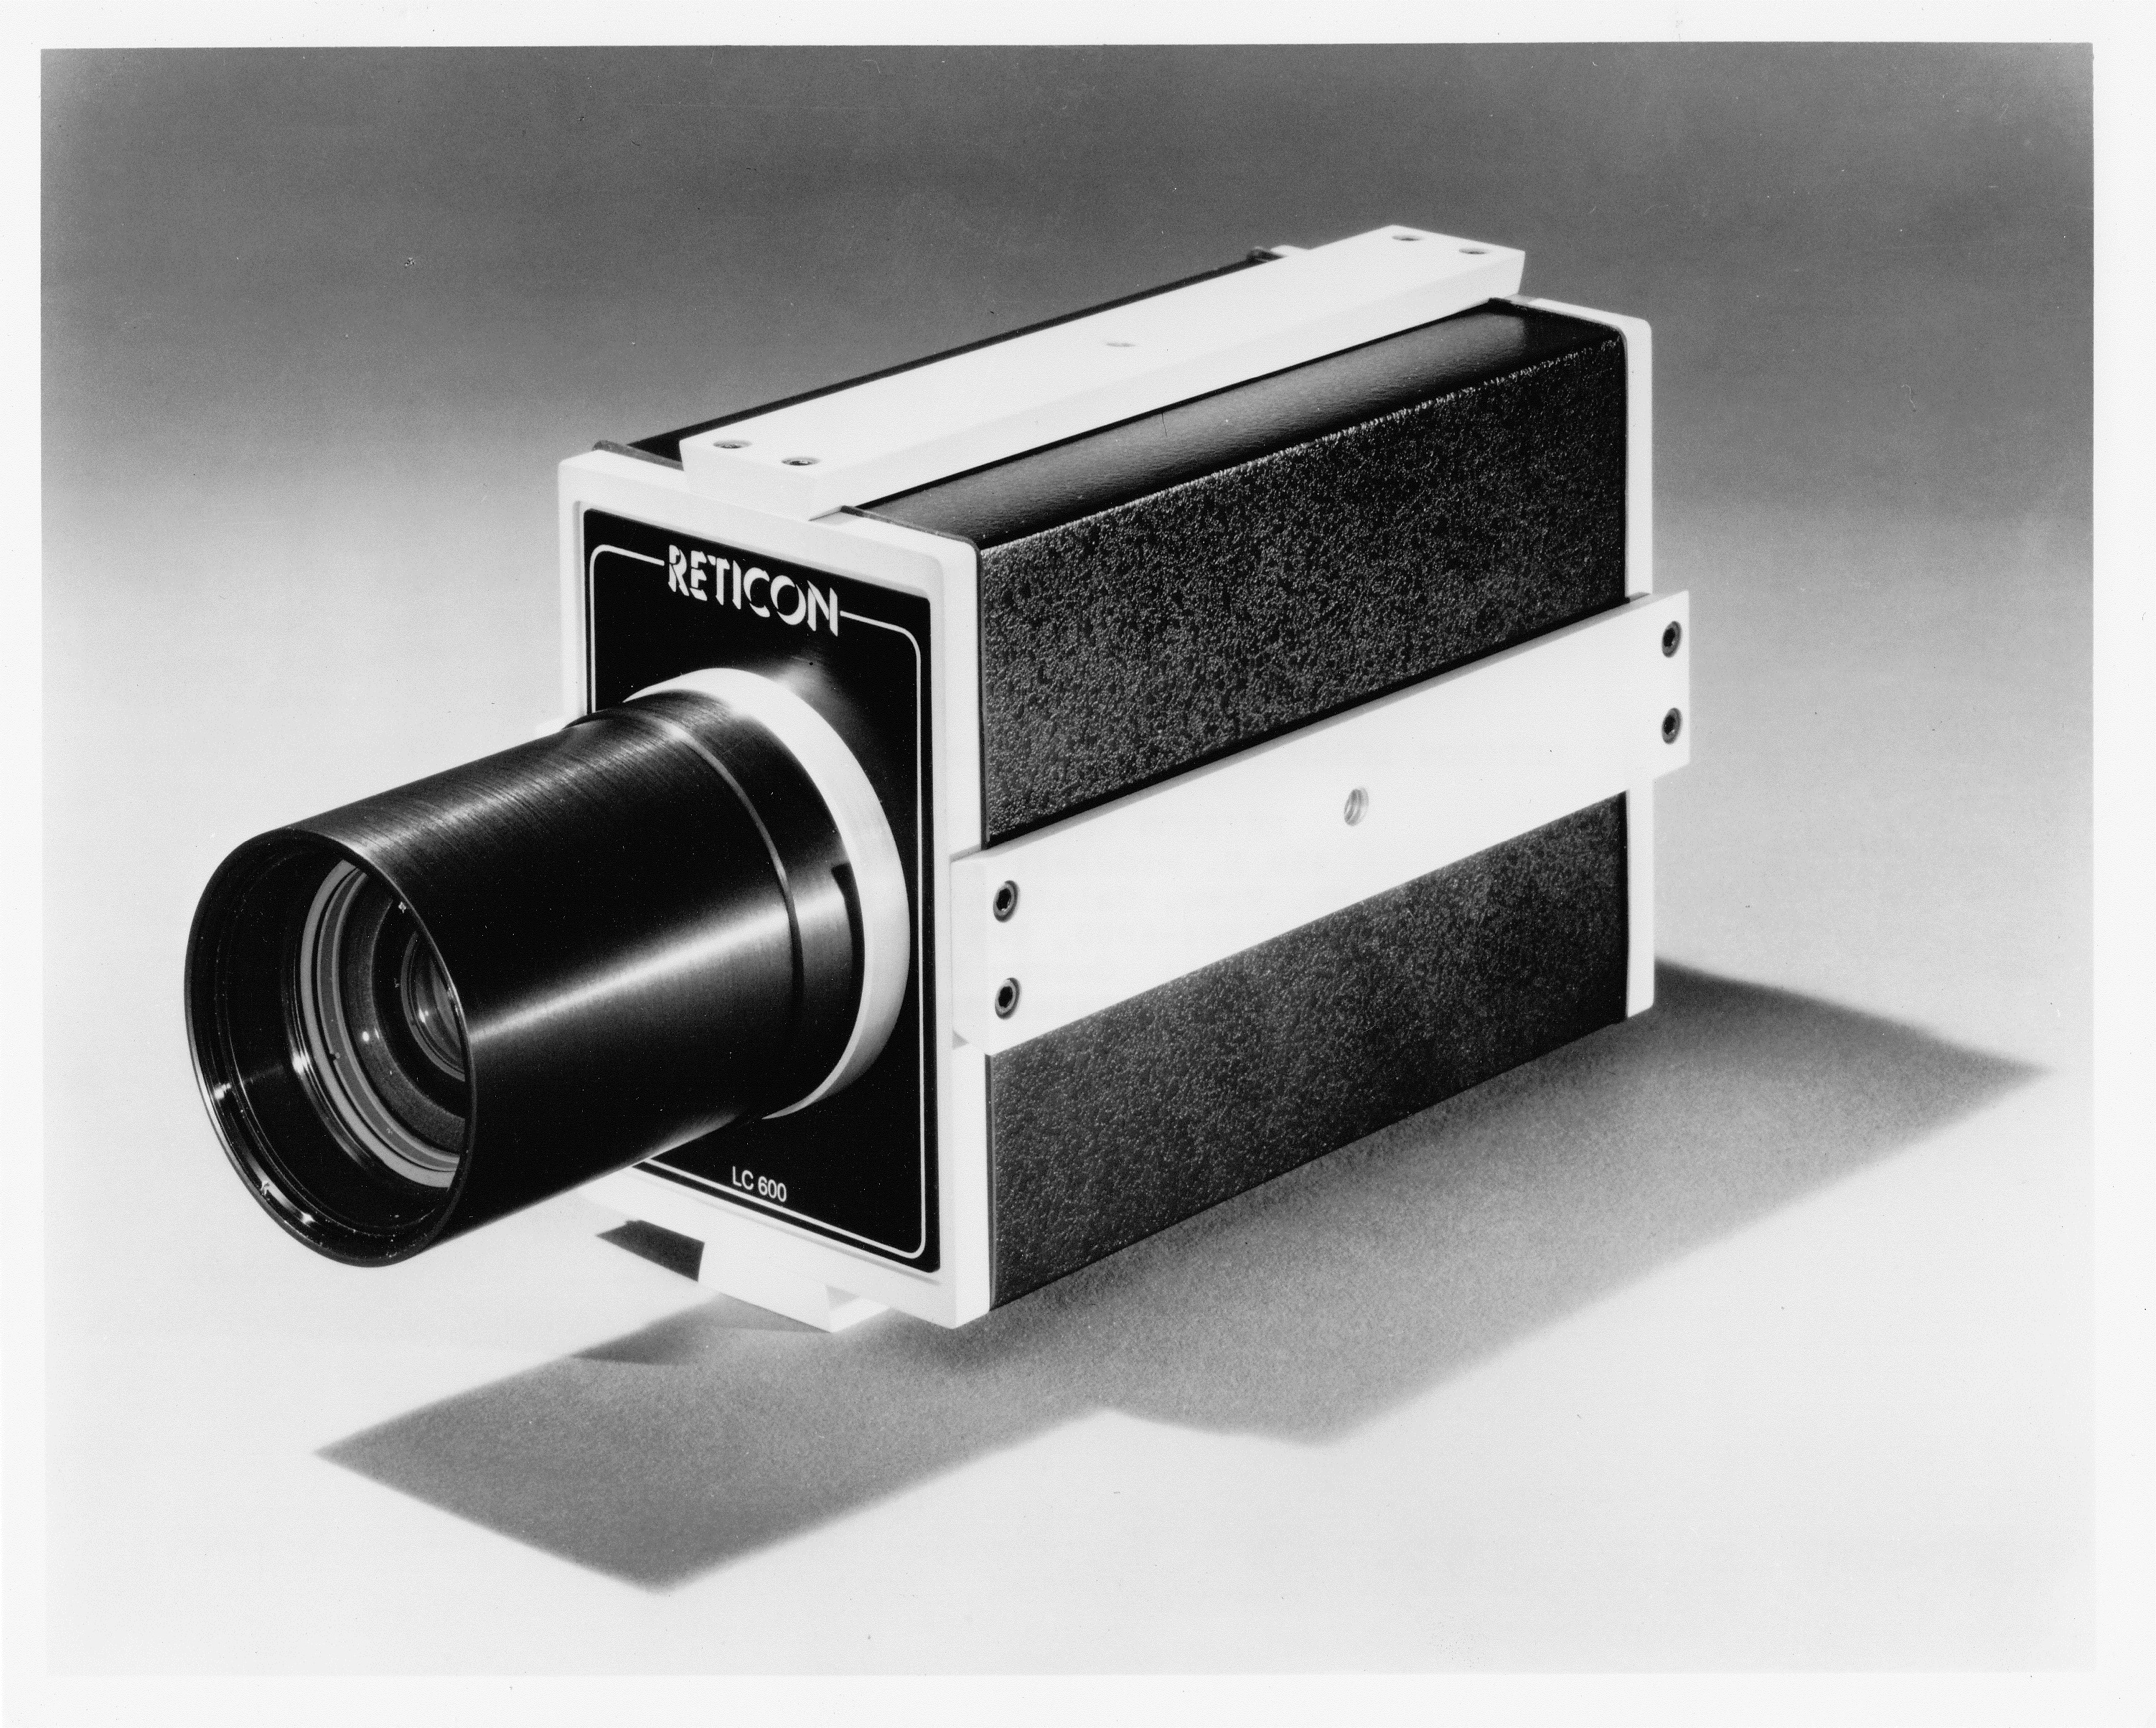 Reticon LC600 Digital Line Scan Camera (1974)